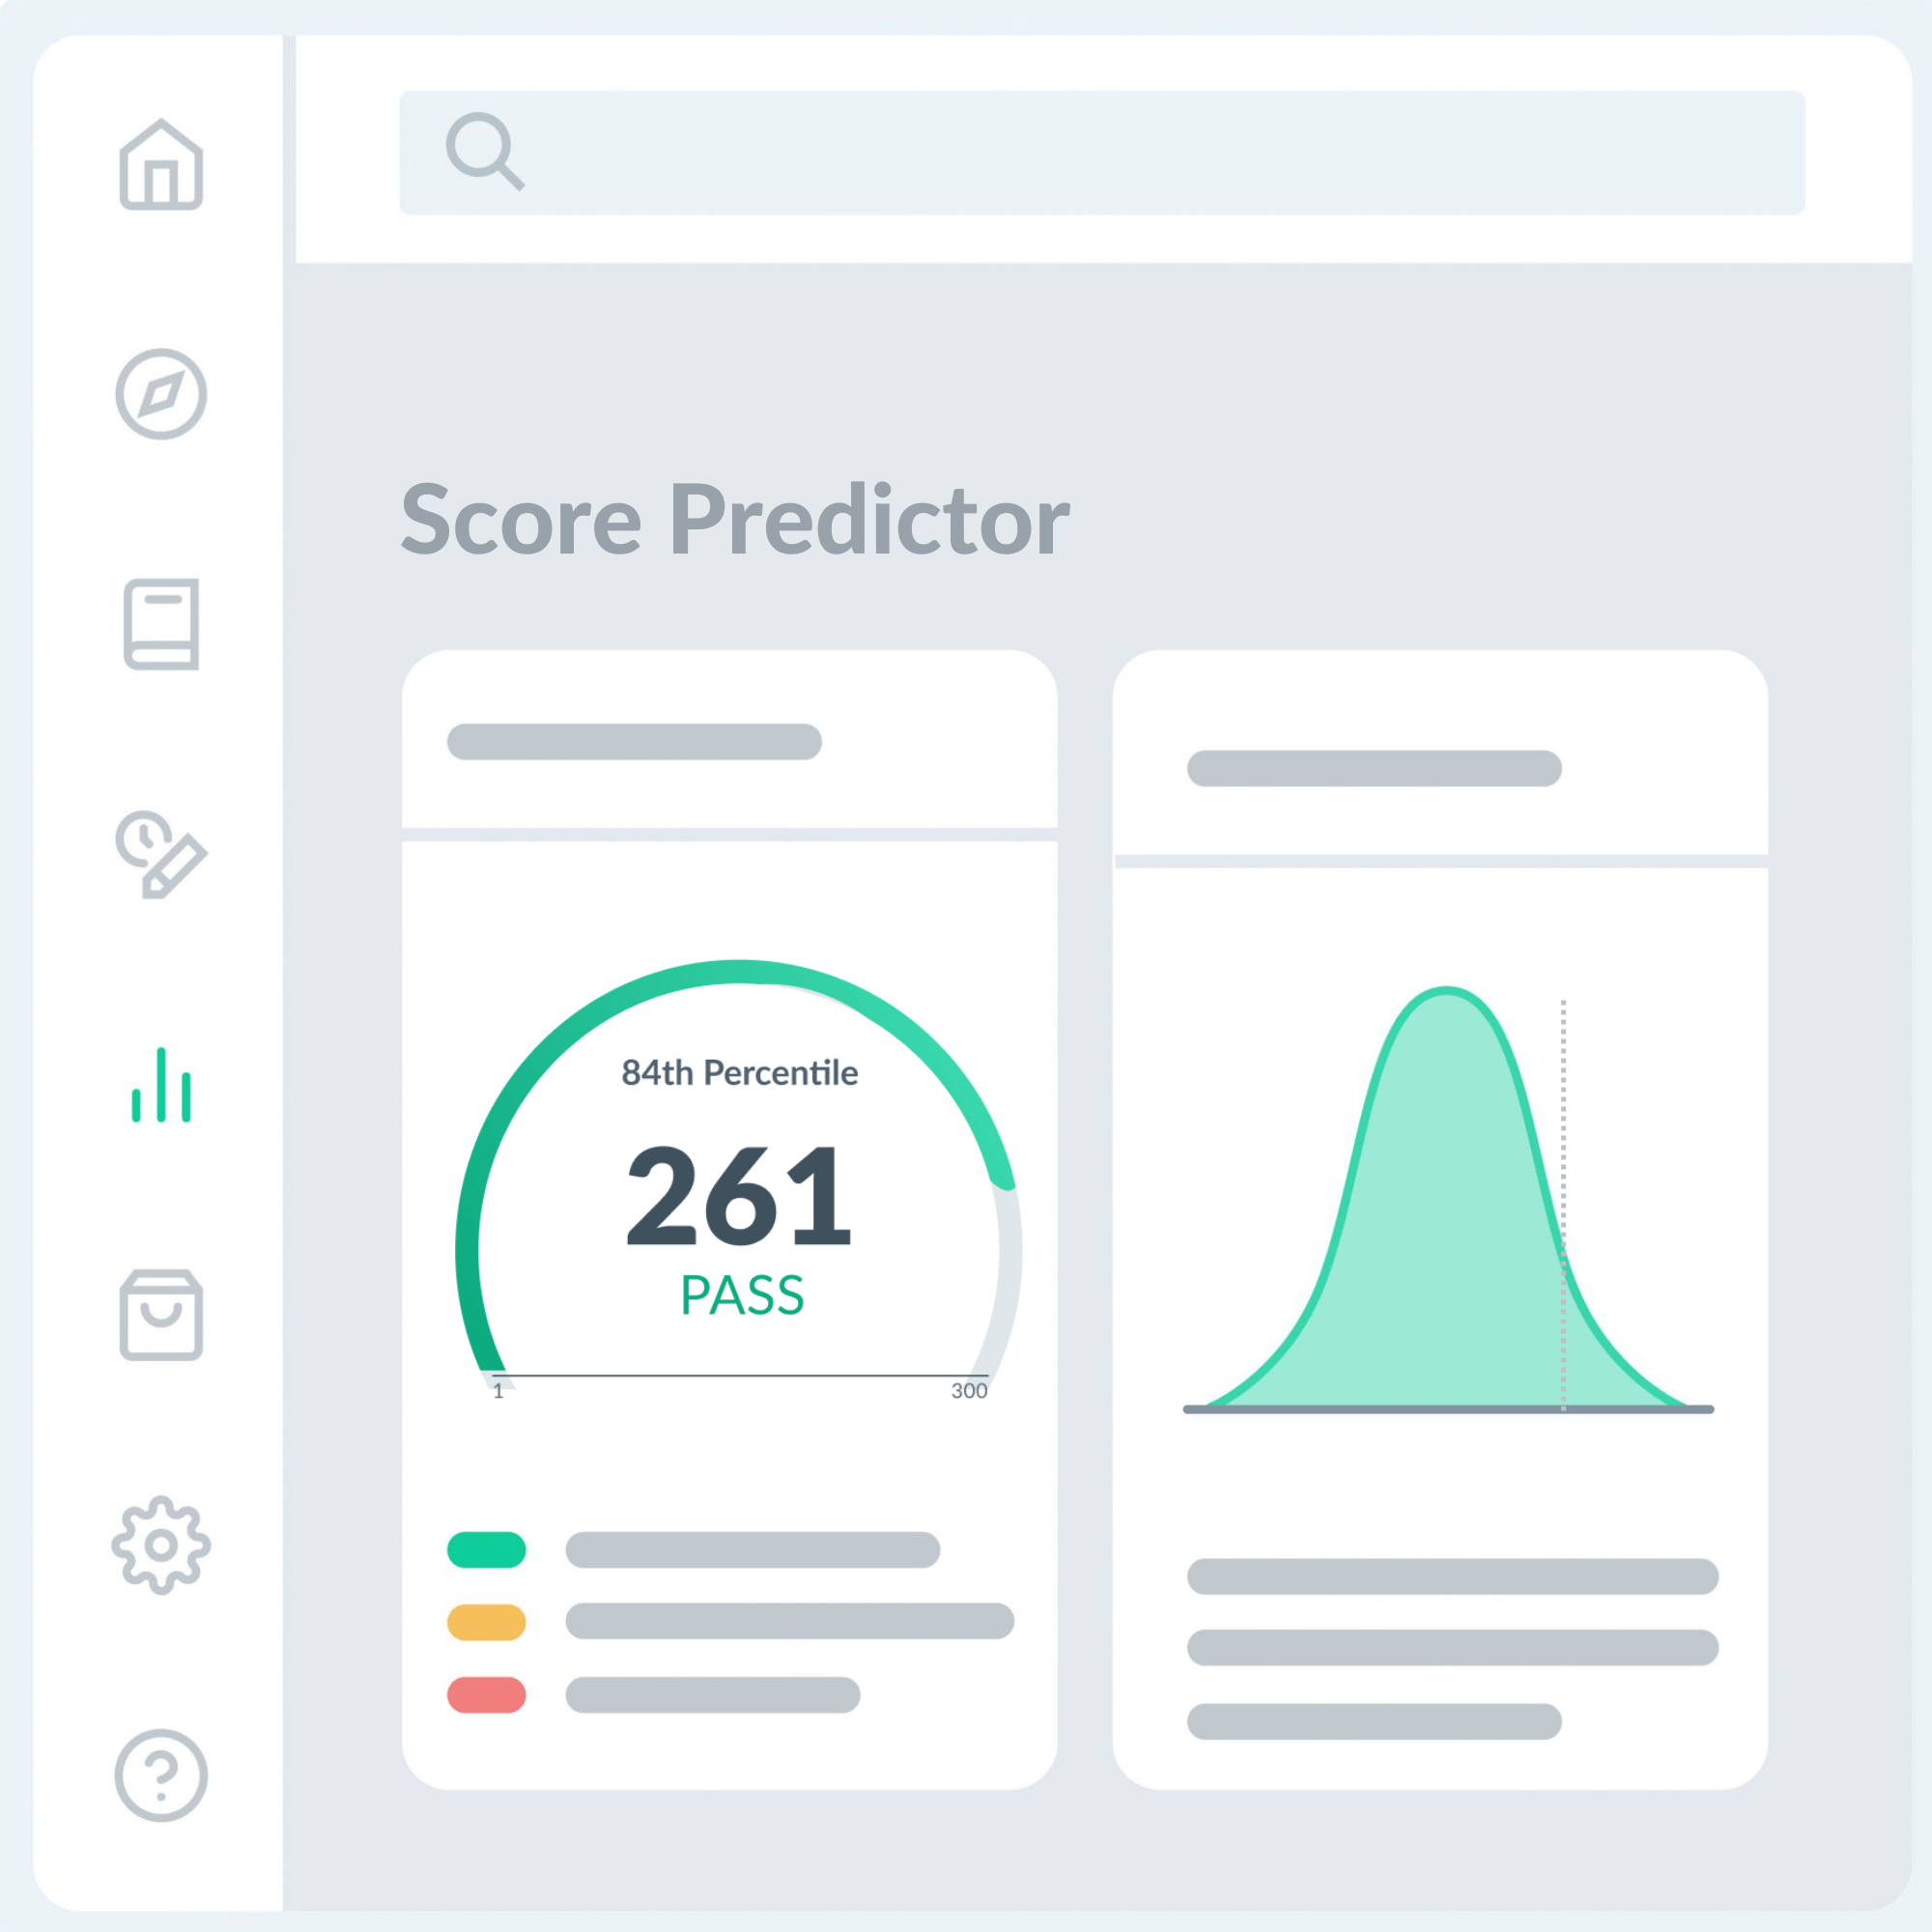 Score Predictor dashboard illustration